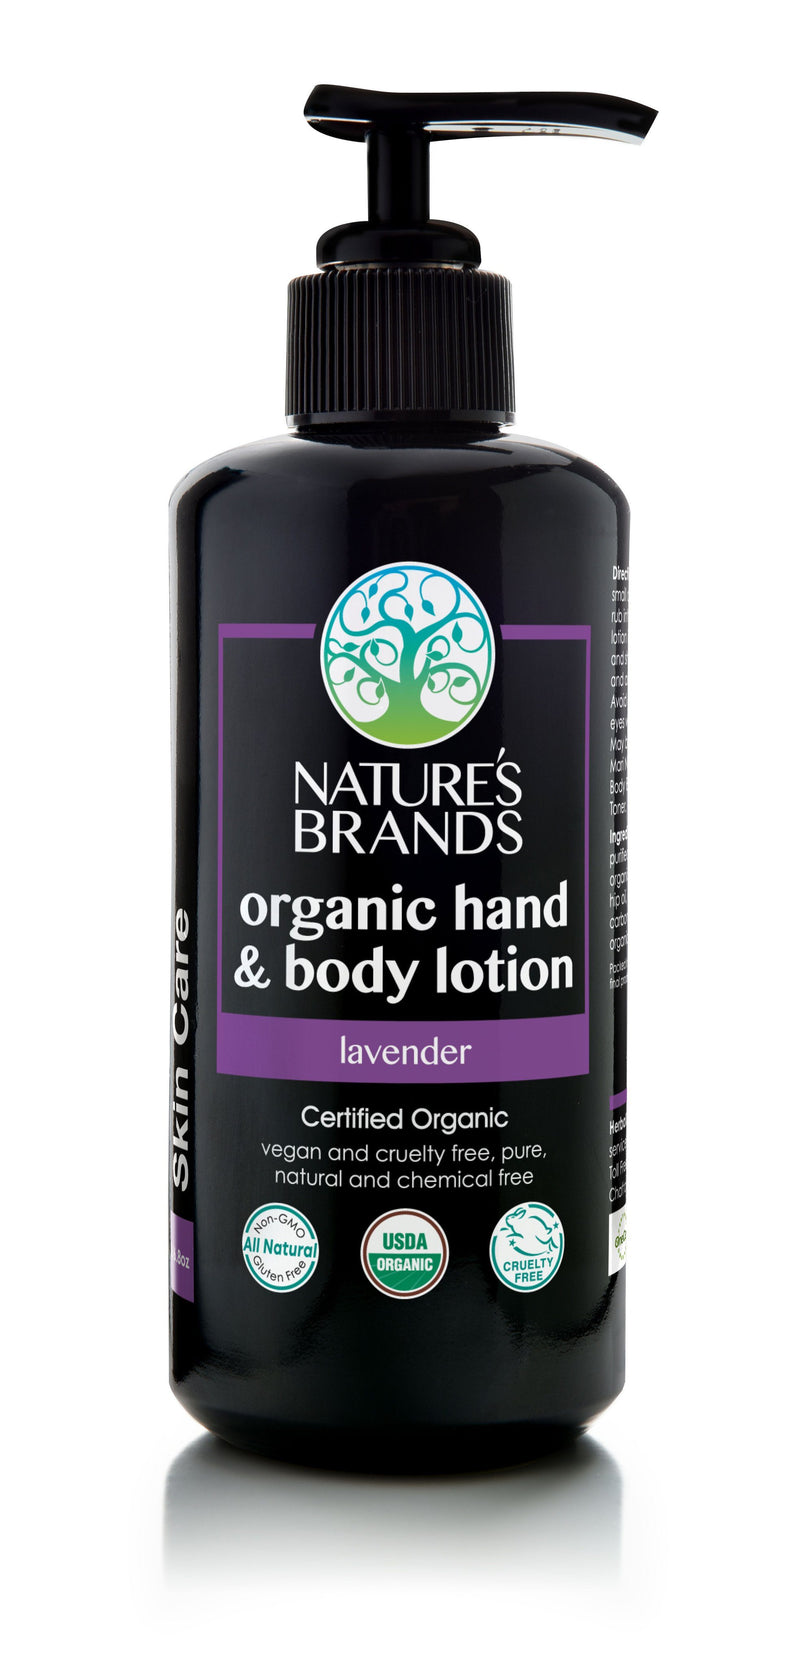 Herbal Choice Mari Organic Hand And Body Lotion, Lavender - Herbal Choice Mari Organic Hand And Body Lotion, Lavender - Herbal Choice Mari Organic Hand And Body Lotion, Lavender